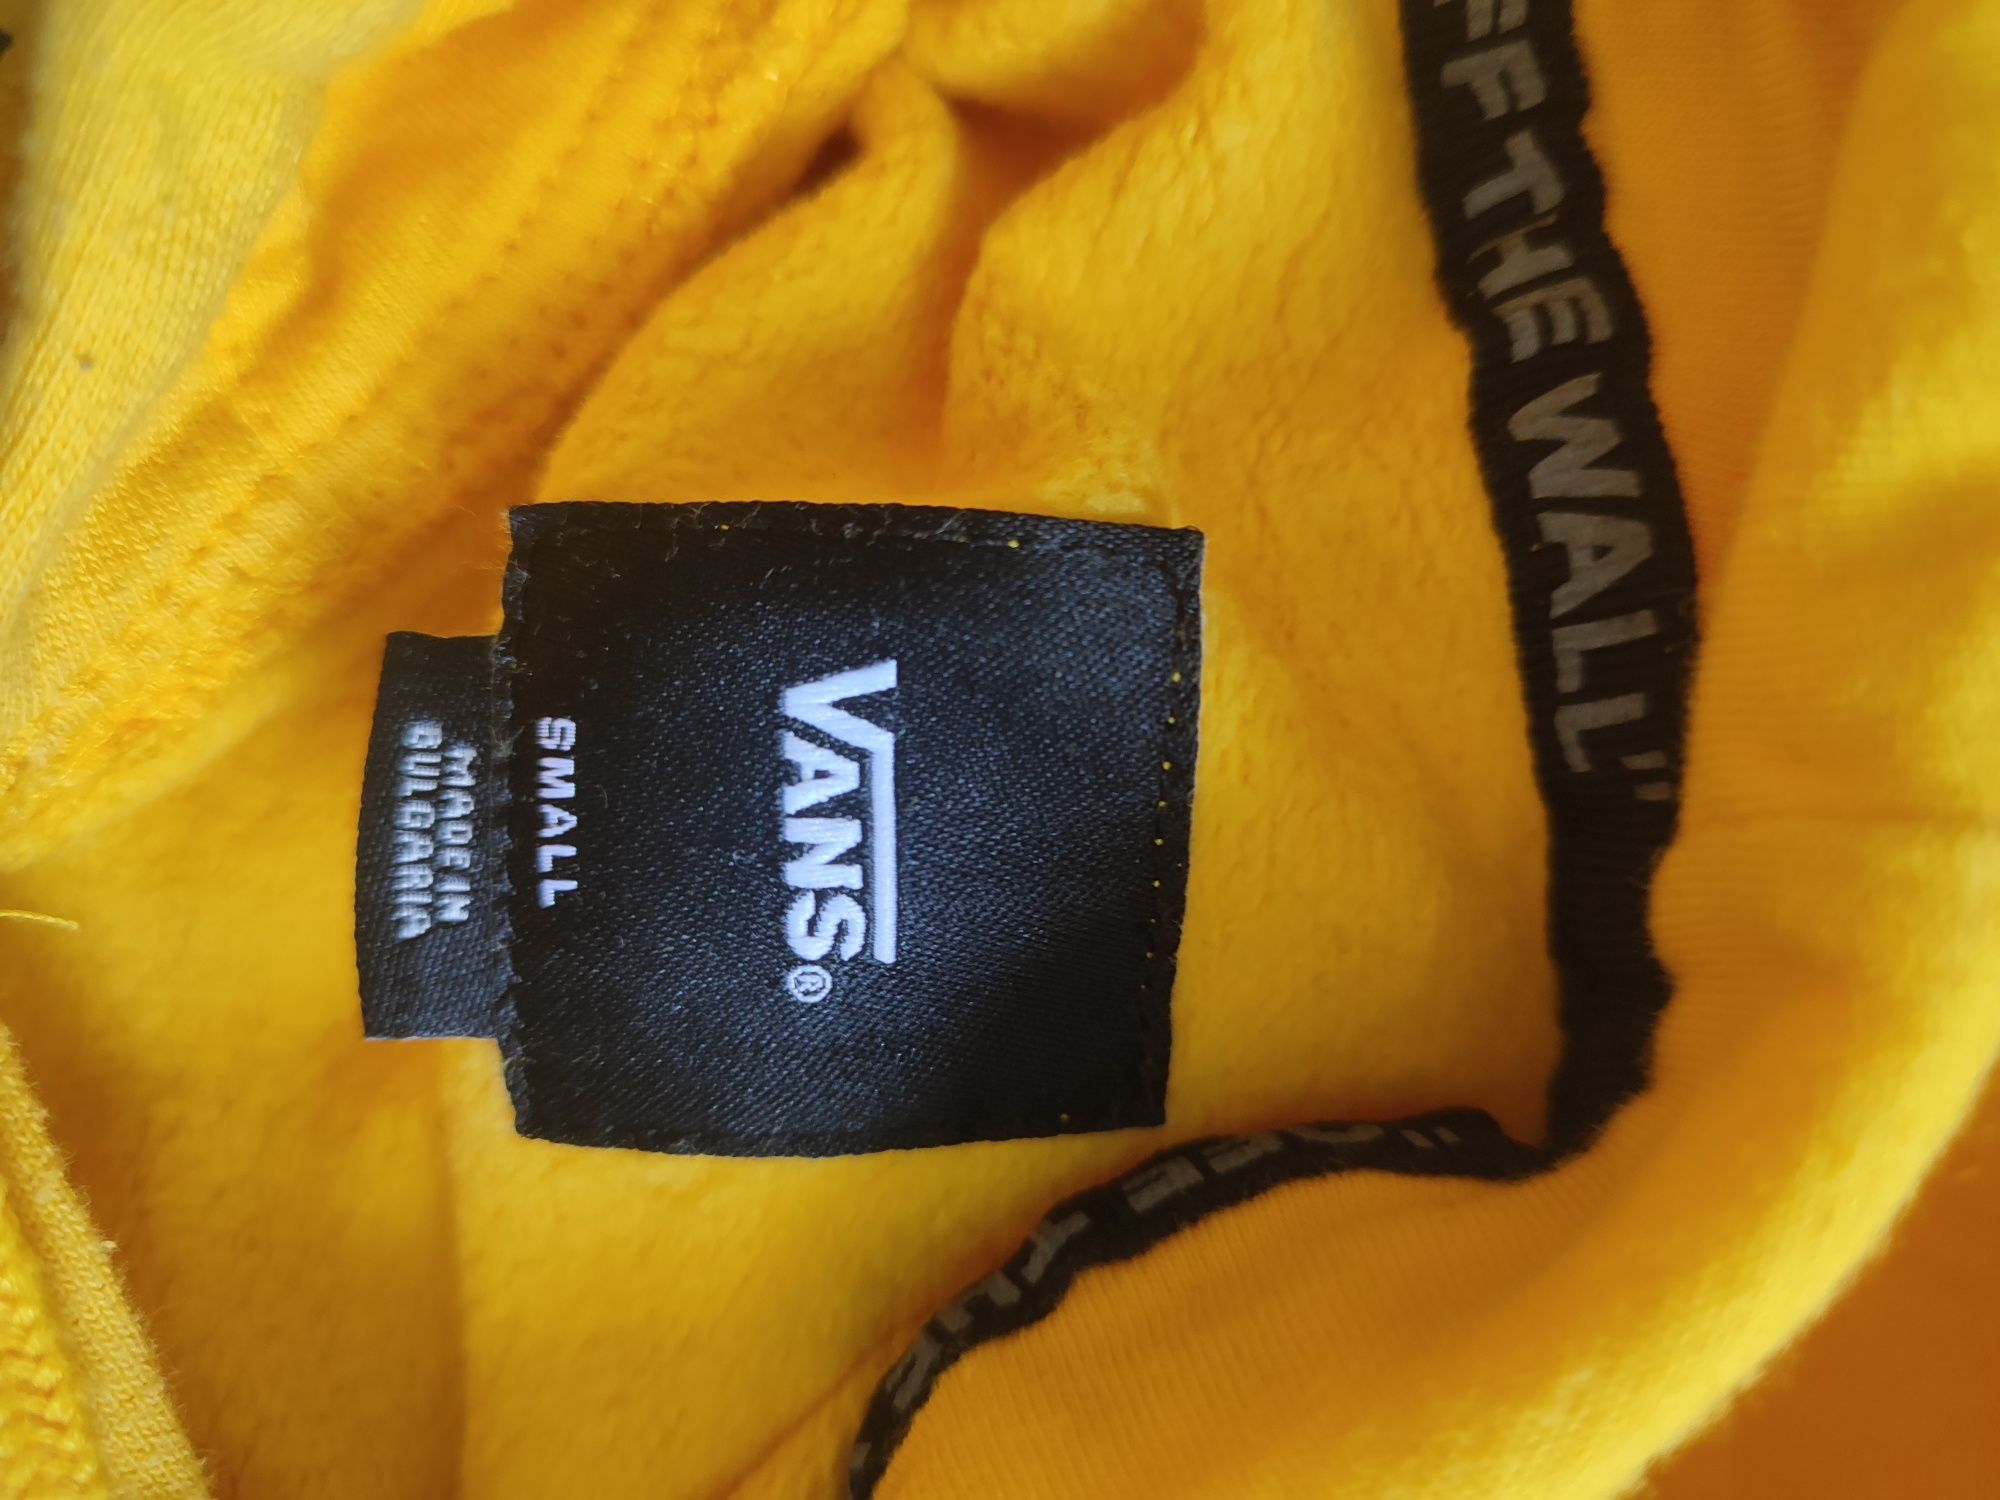 Bluza VANS - żółta ,rozmiar większy niż na metce